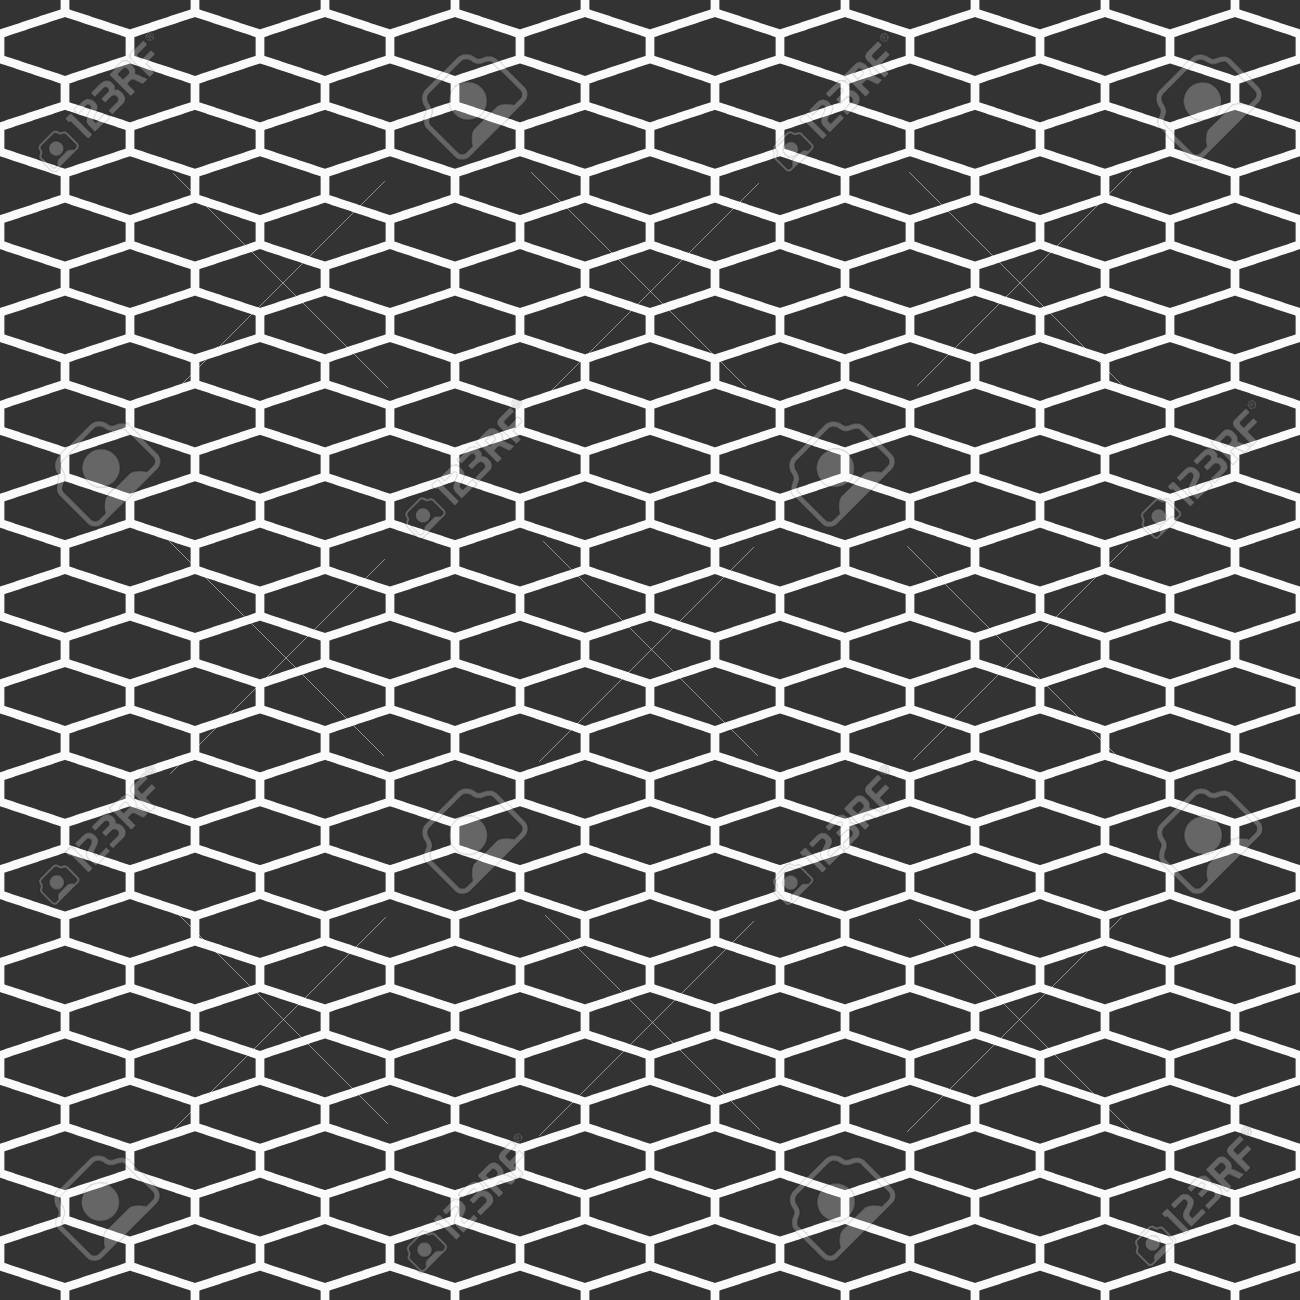 Abstract Seamless Pattern Of Elongated Hexagon Tiles Hexagonal